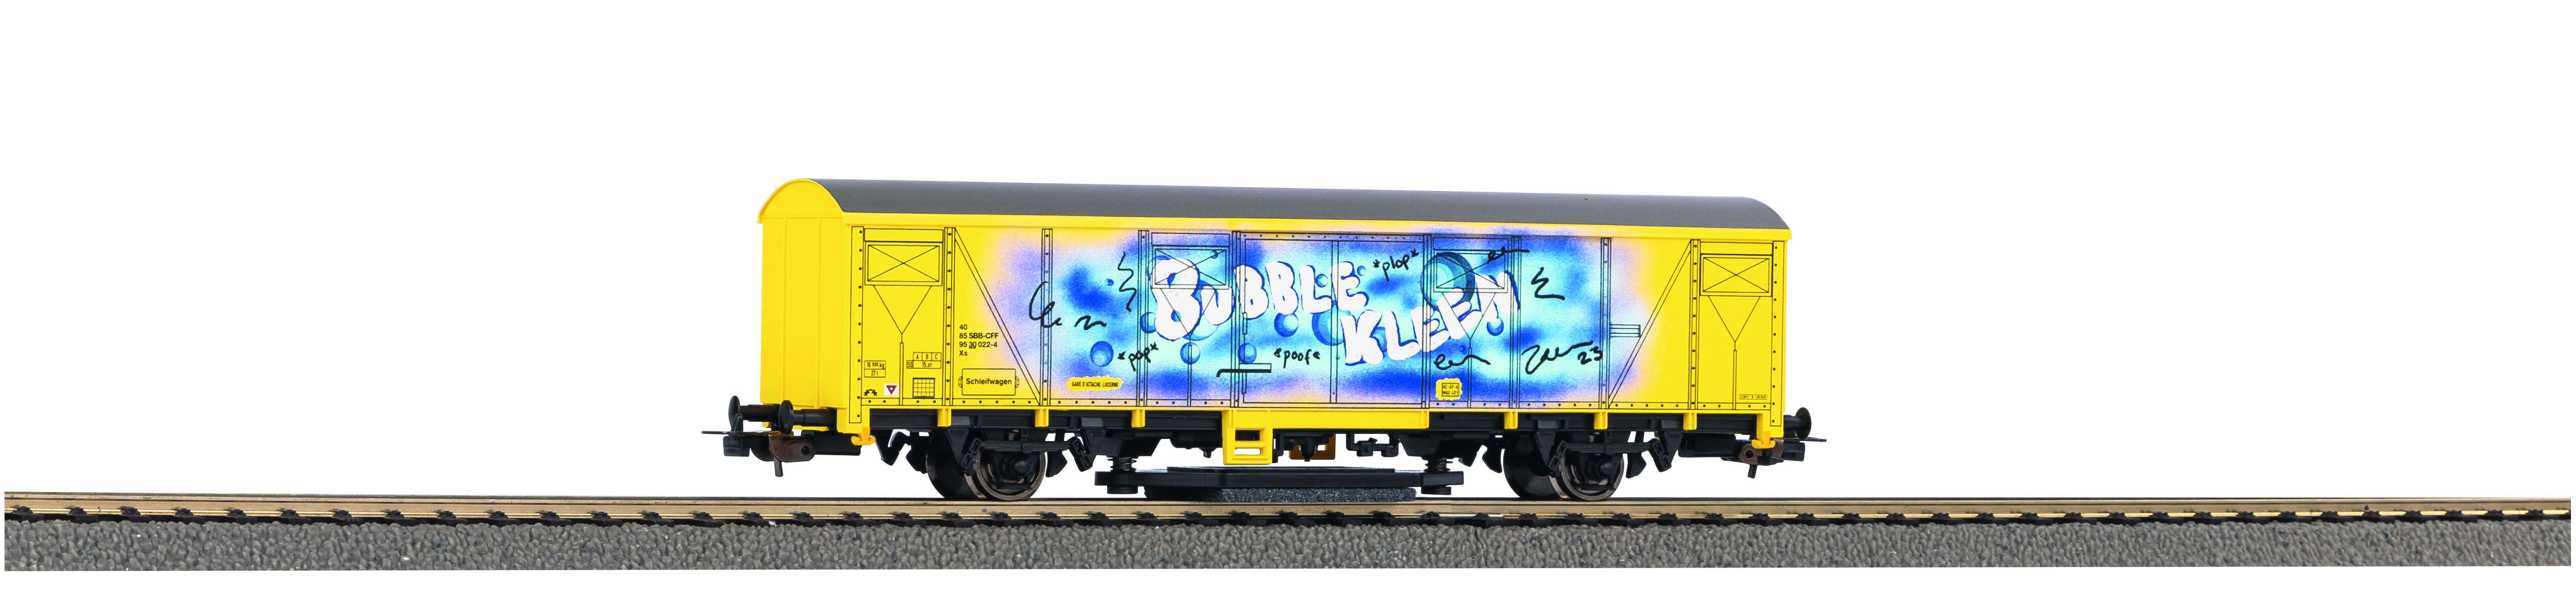 Piko H0 54309, SBB Schienenreinigungswagen gelb mit Graffiti, Ep.V